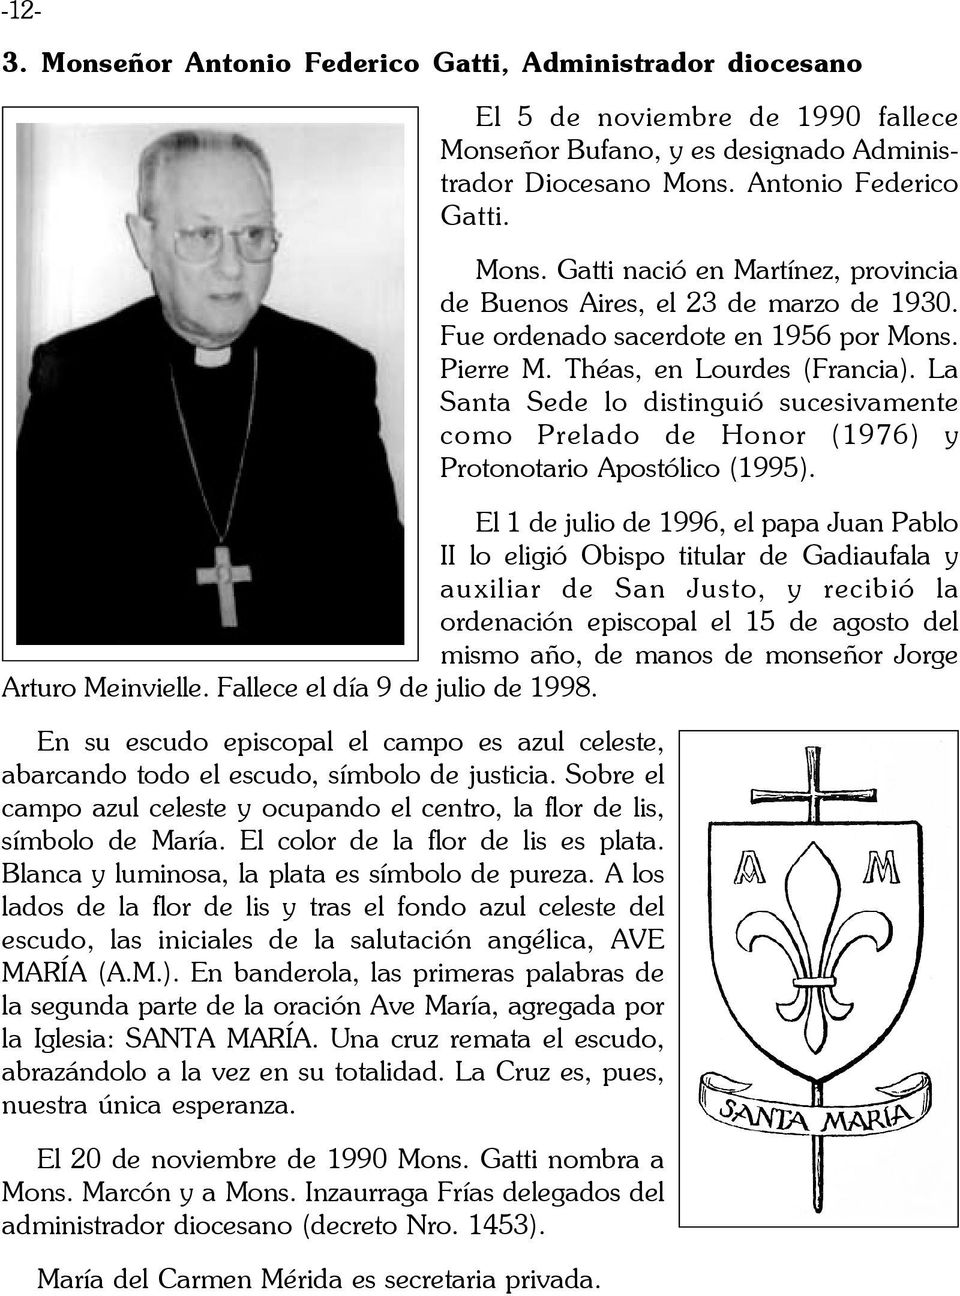 El 1 de julio de 1996, el papa Juan Pablo II lo eligió Obispo titular de Gadiaufala y auxiliar de San Justo, y recibió la ordenación episcopal el 15 de agosto del mismo año, de manos de monseñor